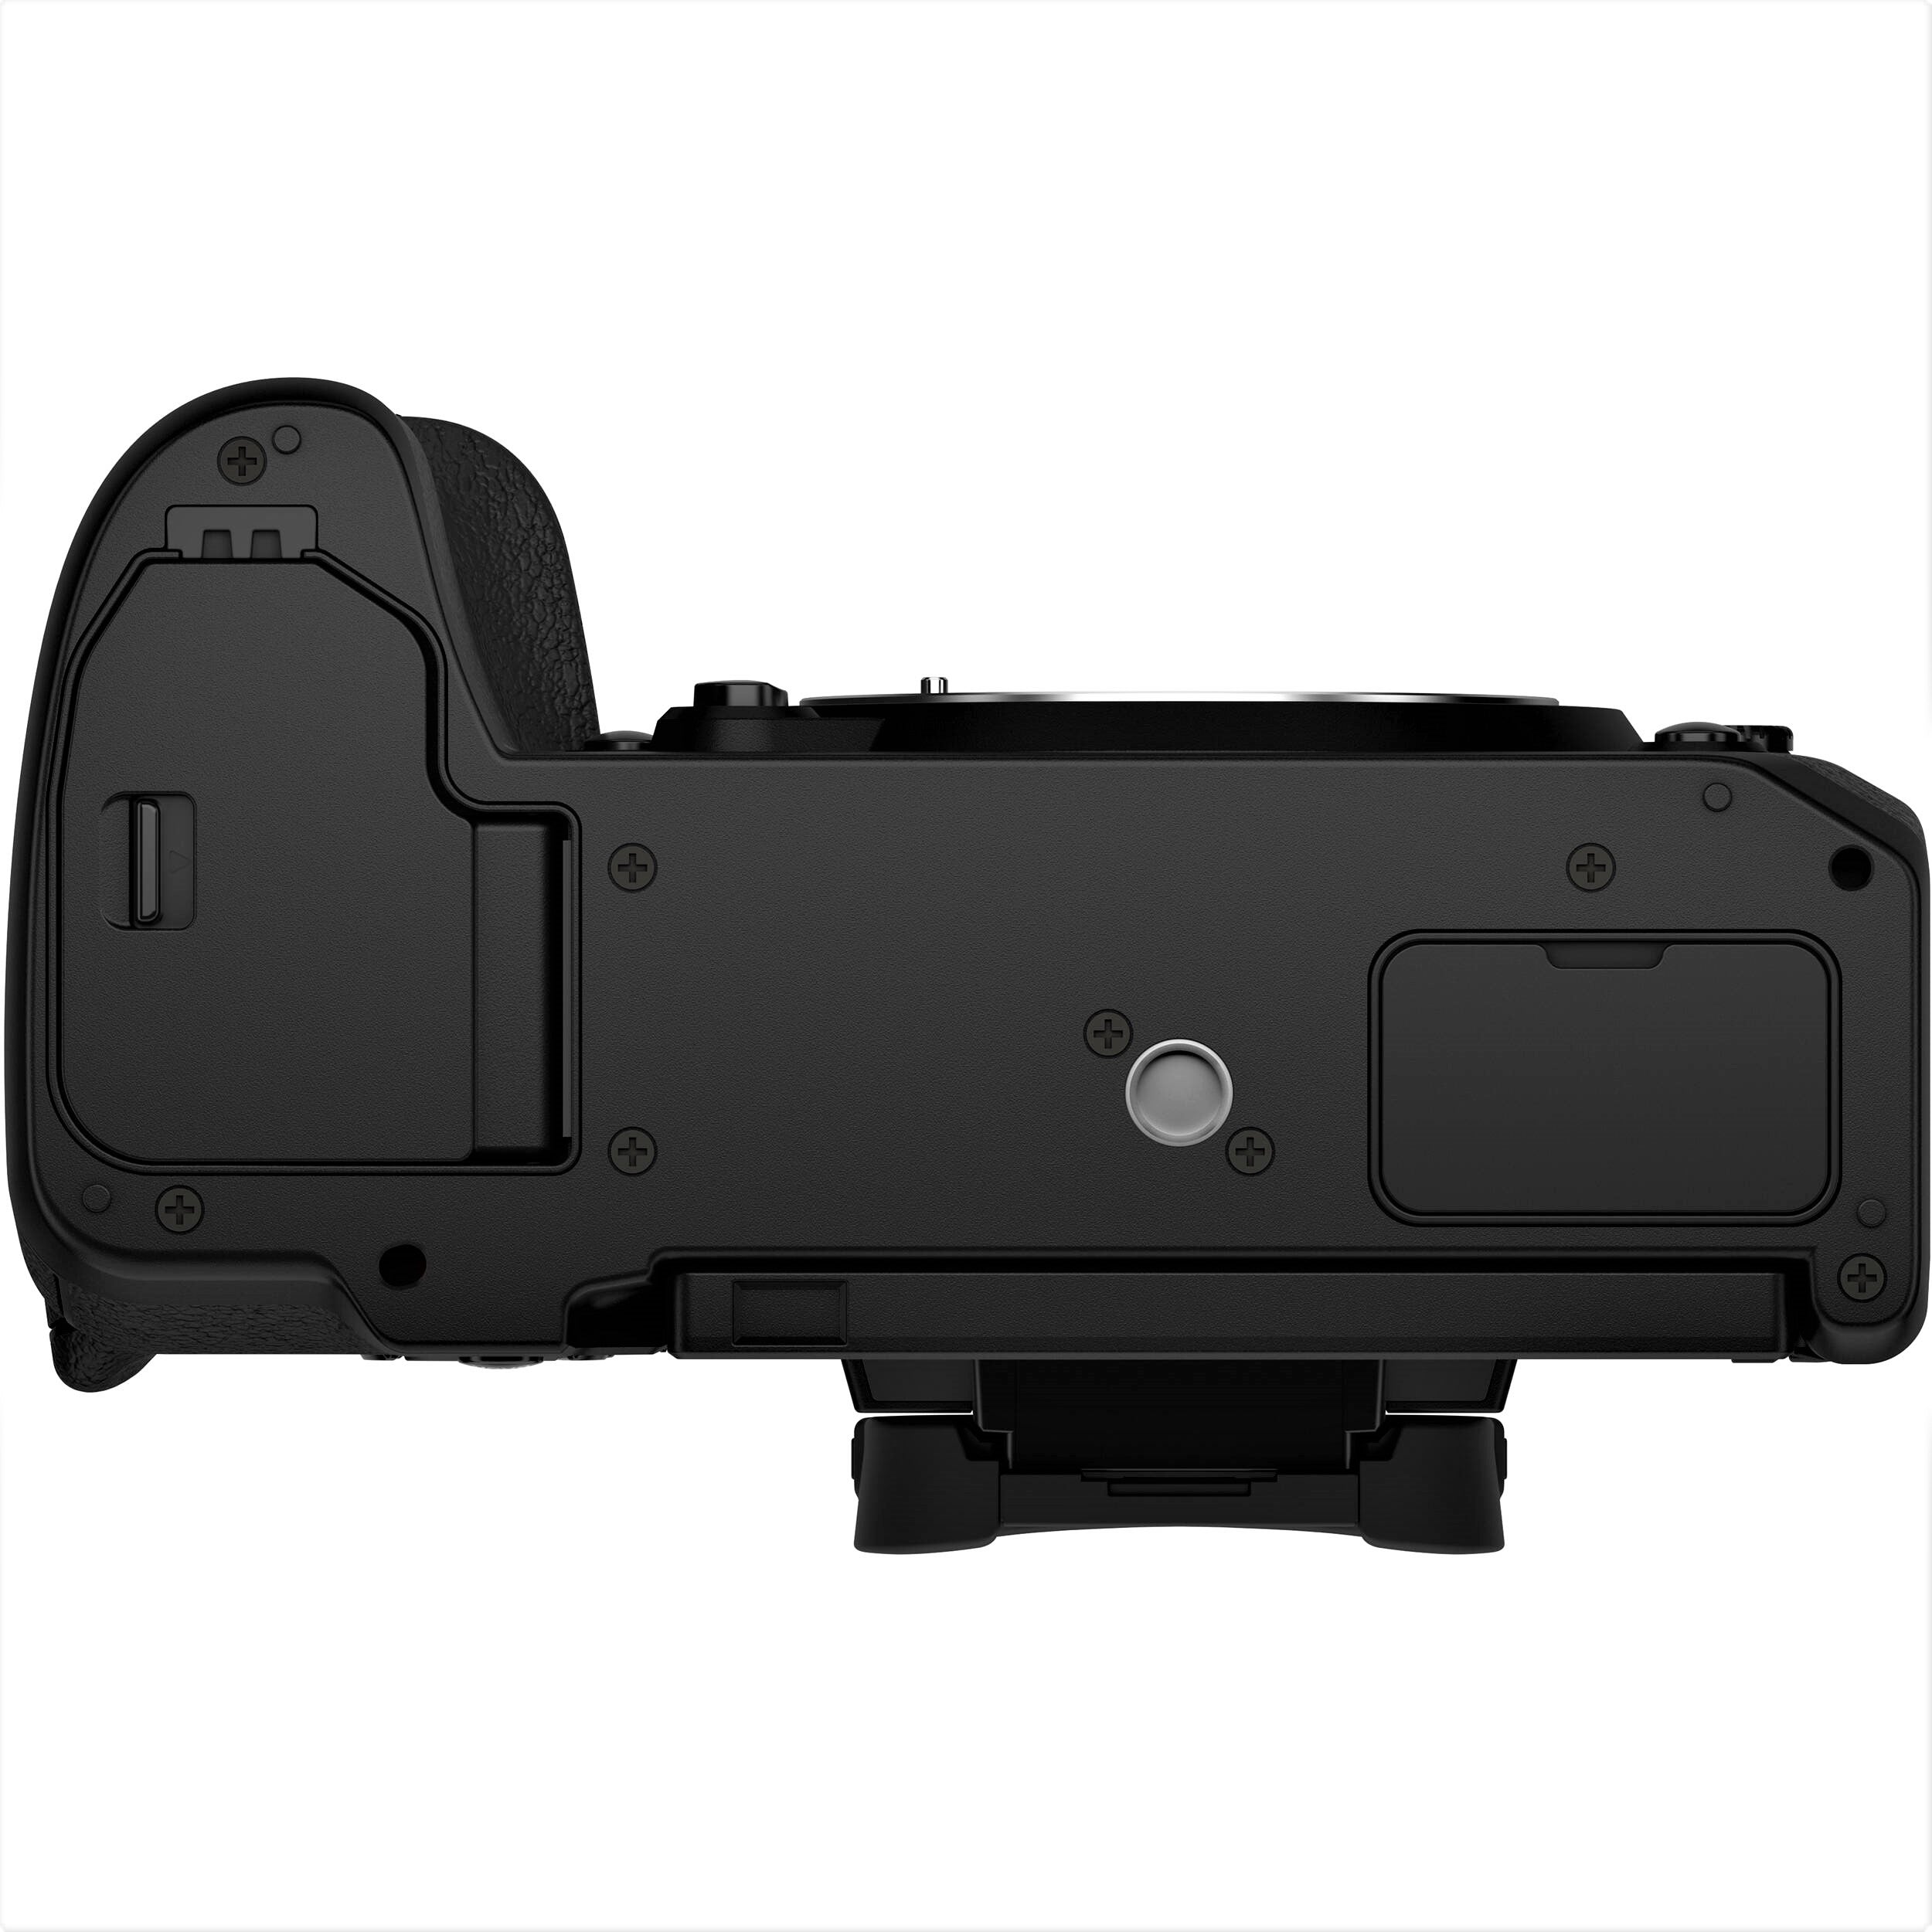 Fujifilm X-H2S Mirrorless Camera - Bottom View